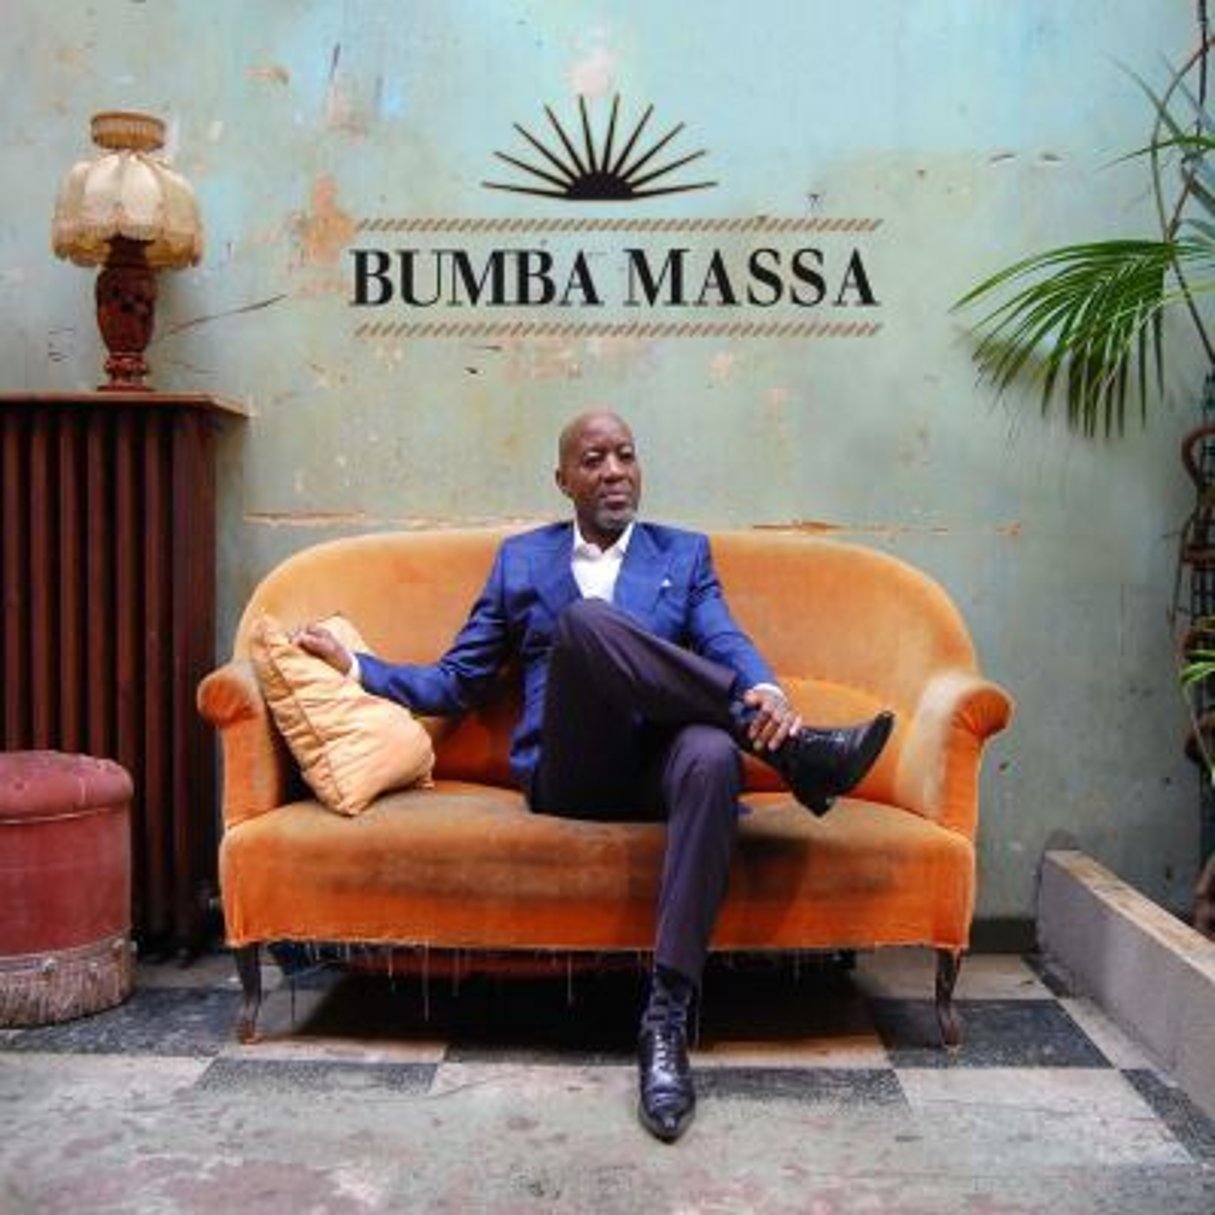 Le chanteur Bumba Massa livre un album de rumba très réussi